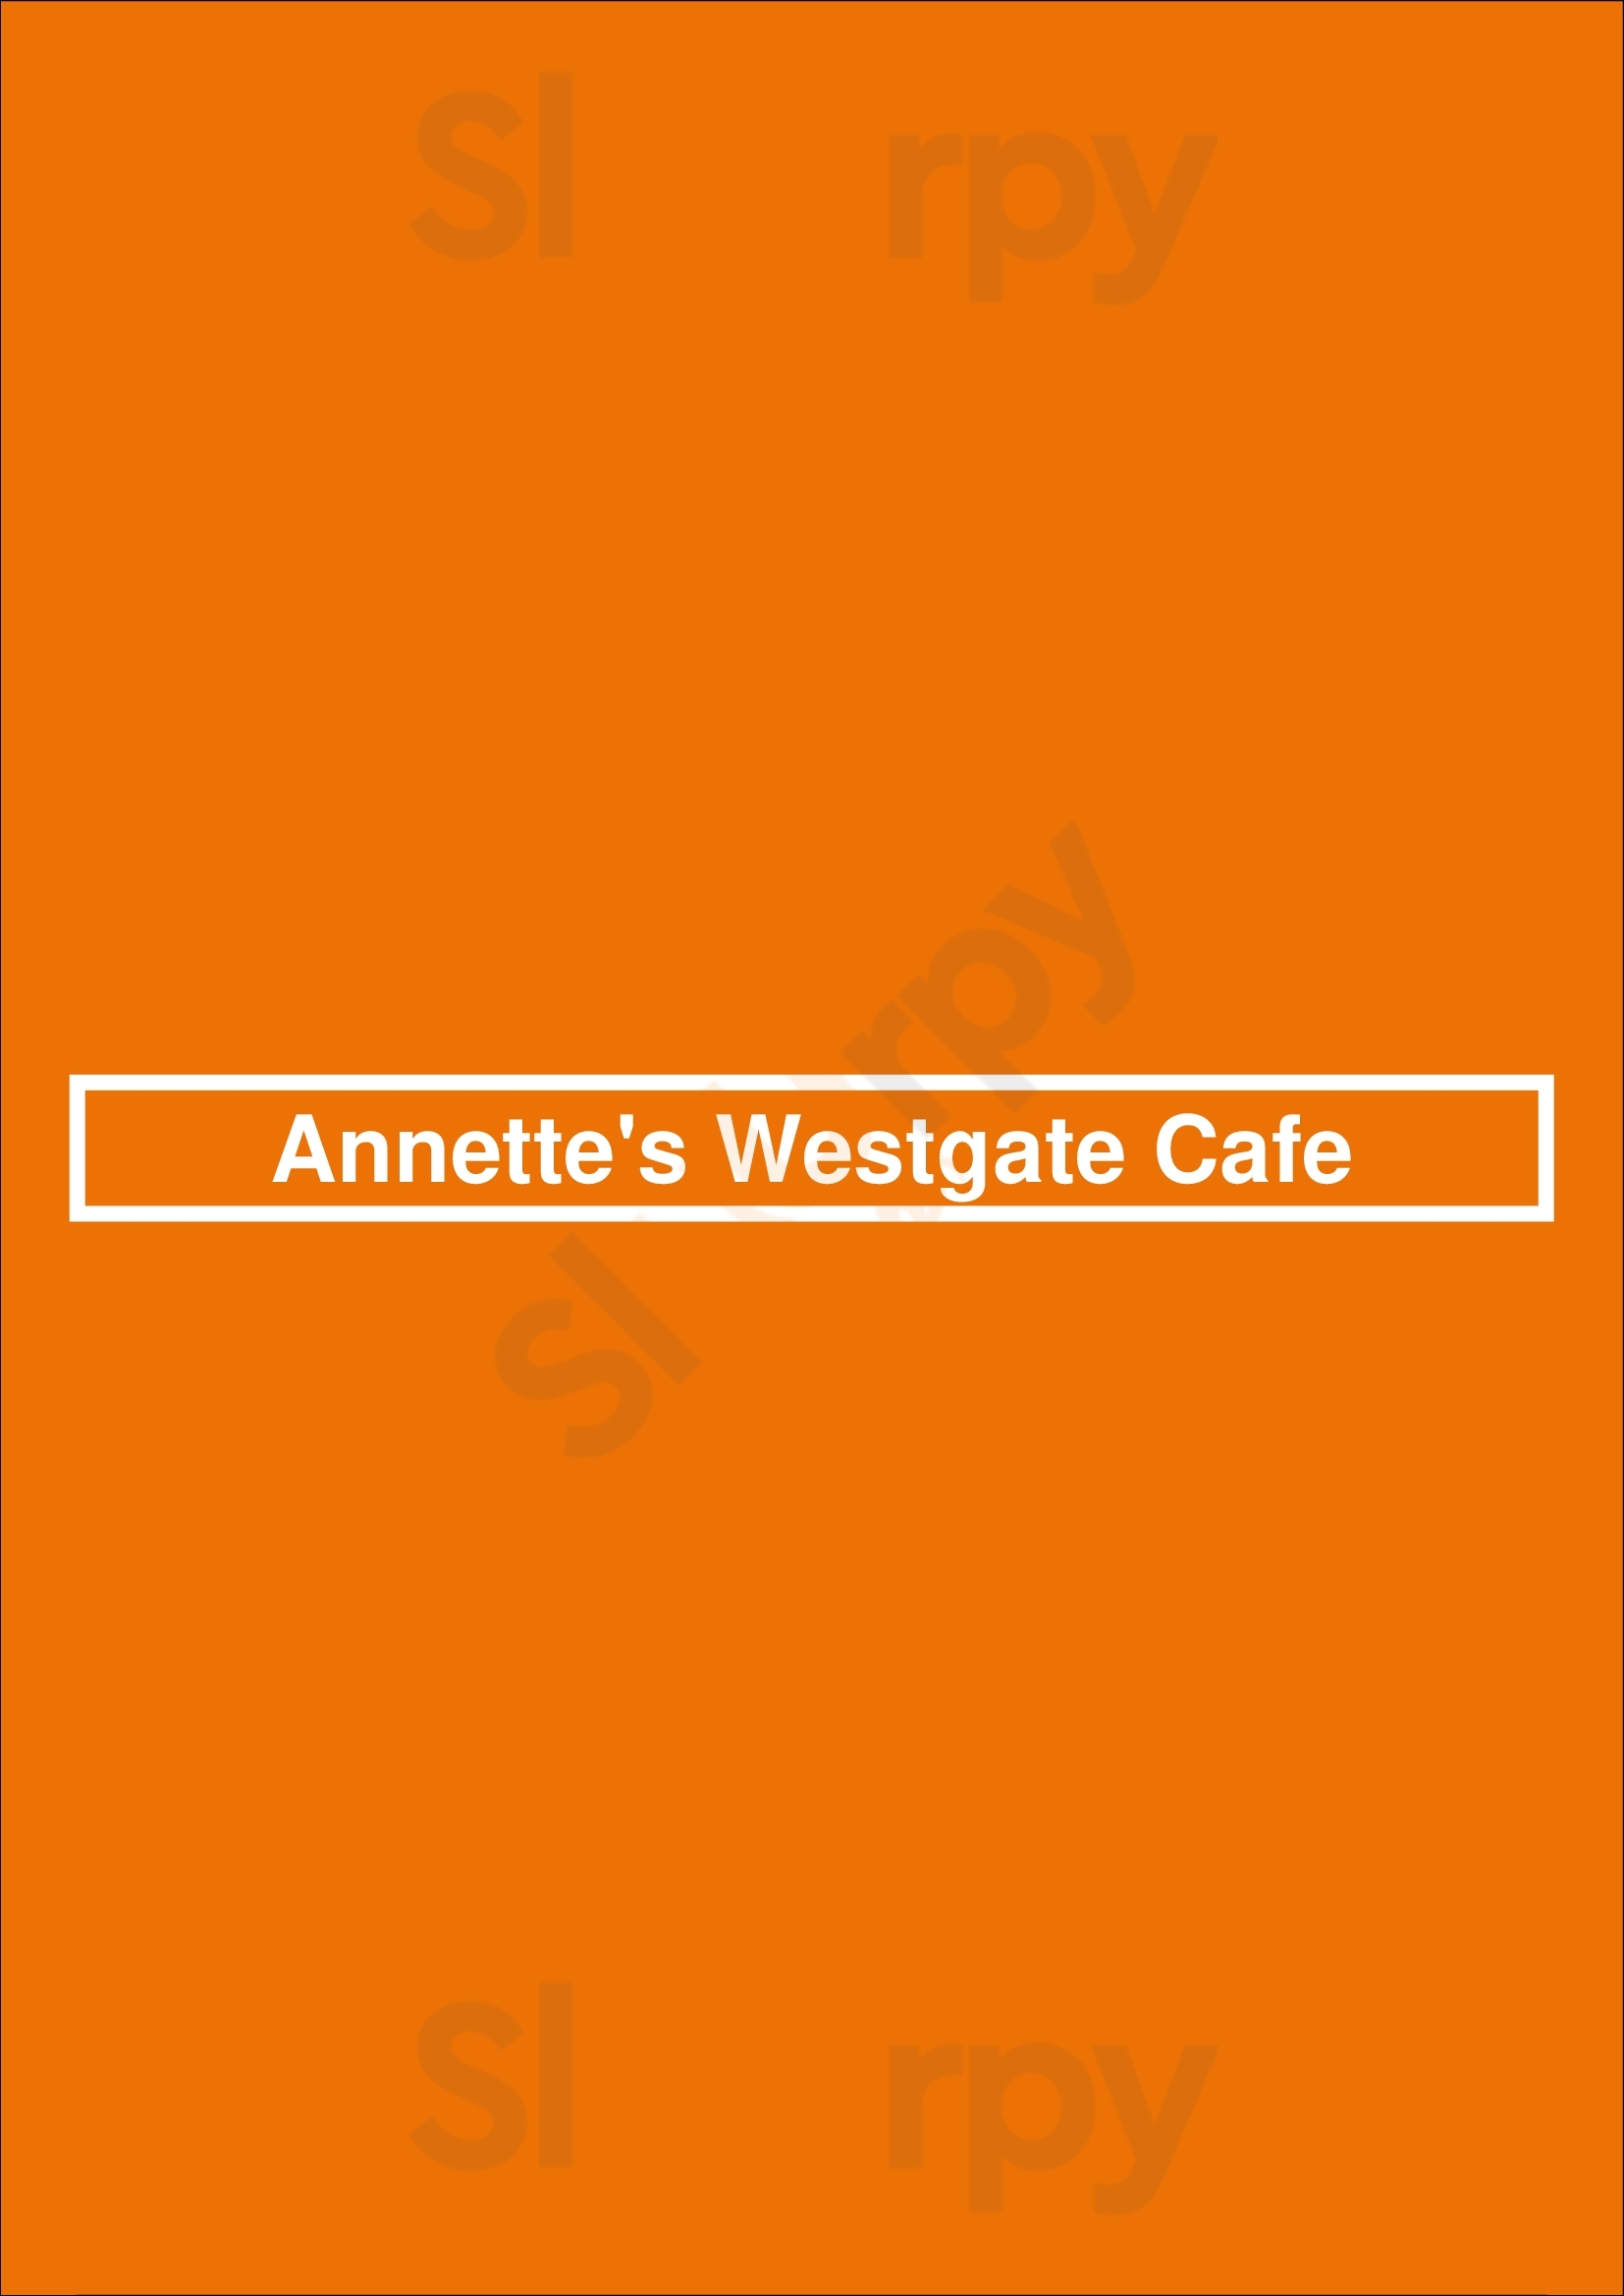 Annette's Westgate Cafe Salem Menu - 1